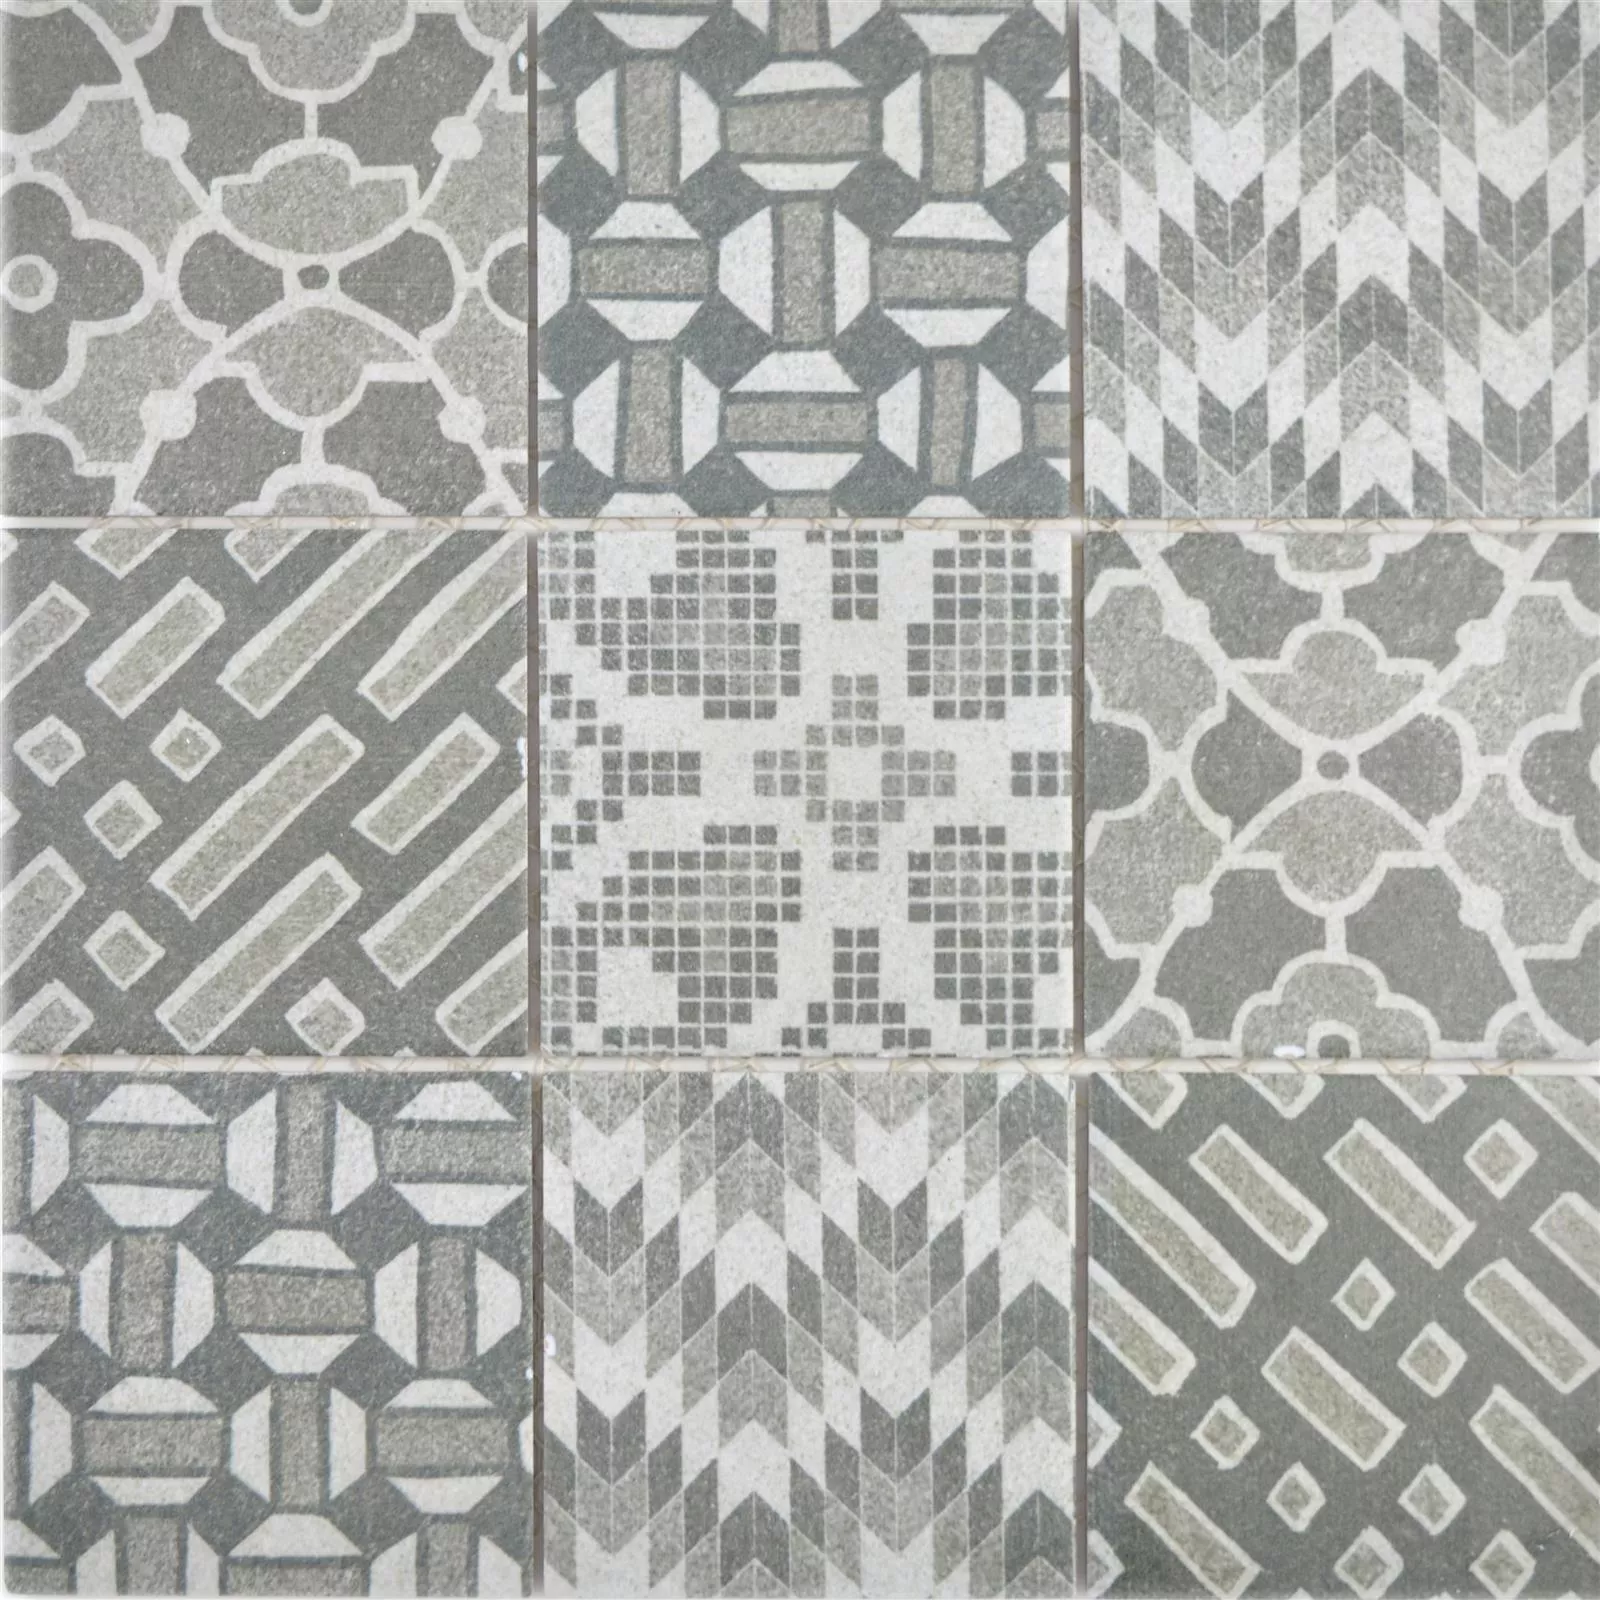 Sample Ceramic Mosaic Tiles Romantica Retro Grigio